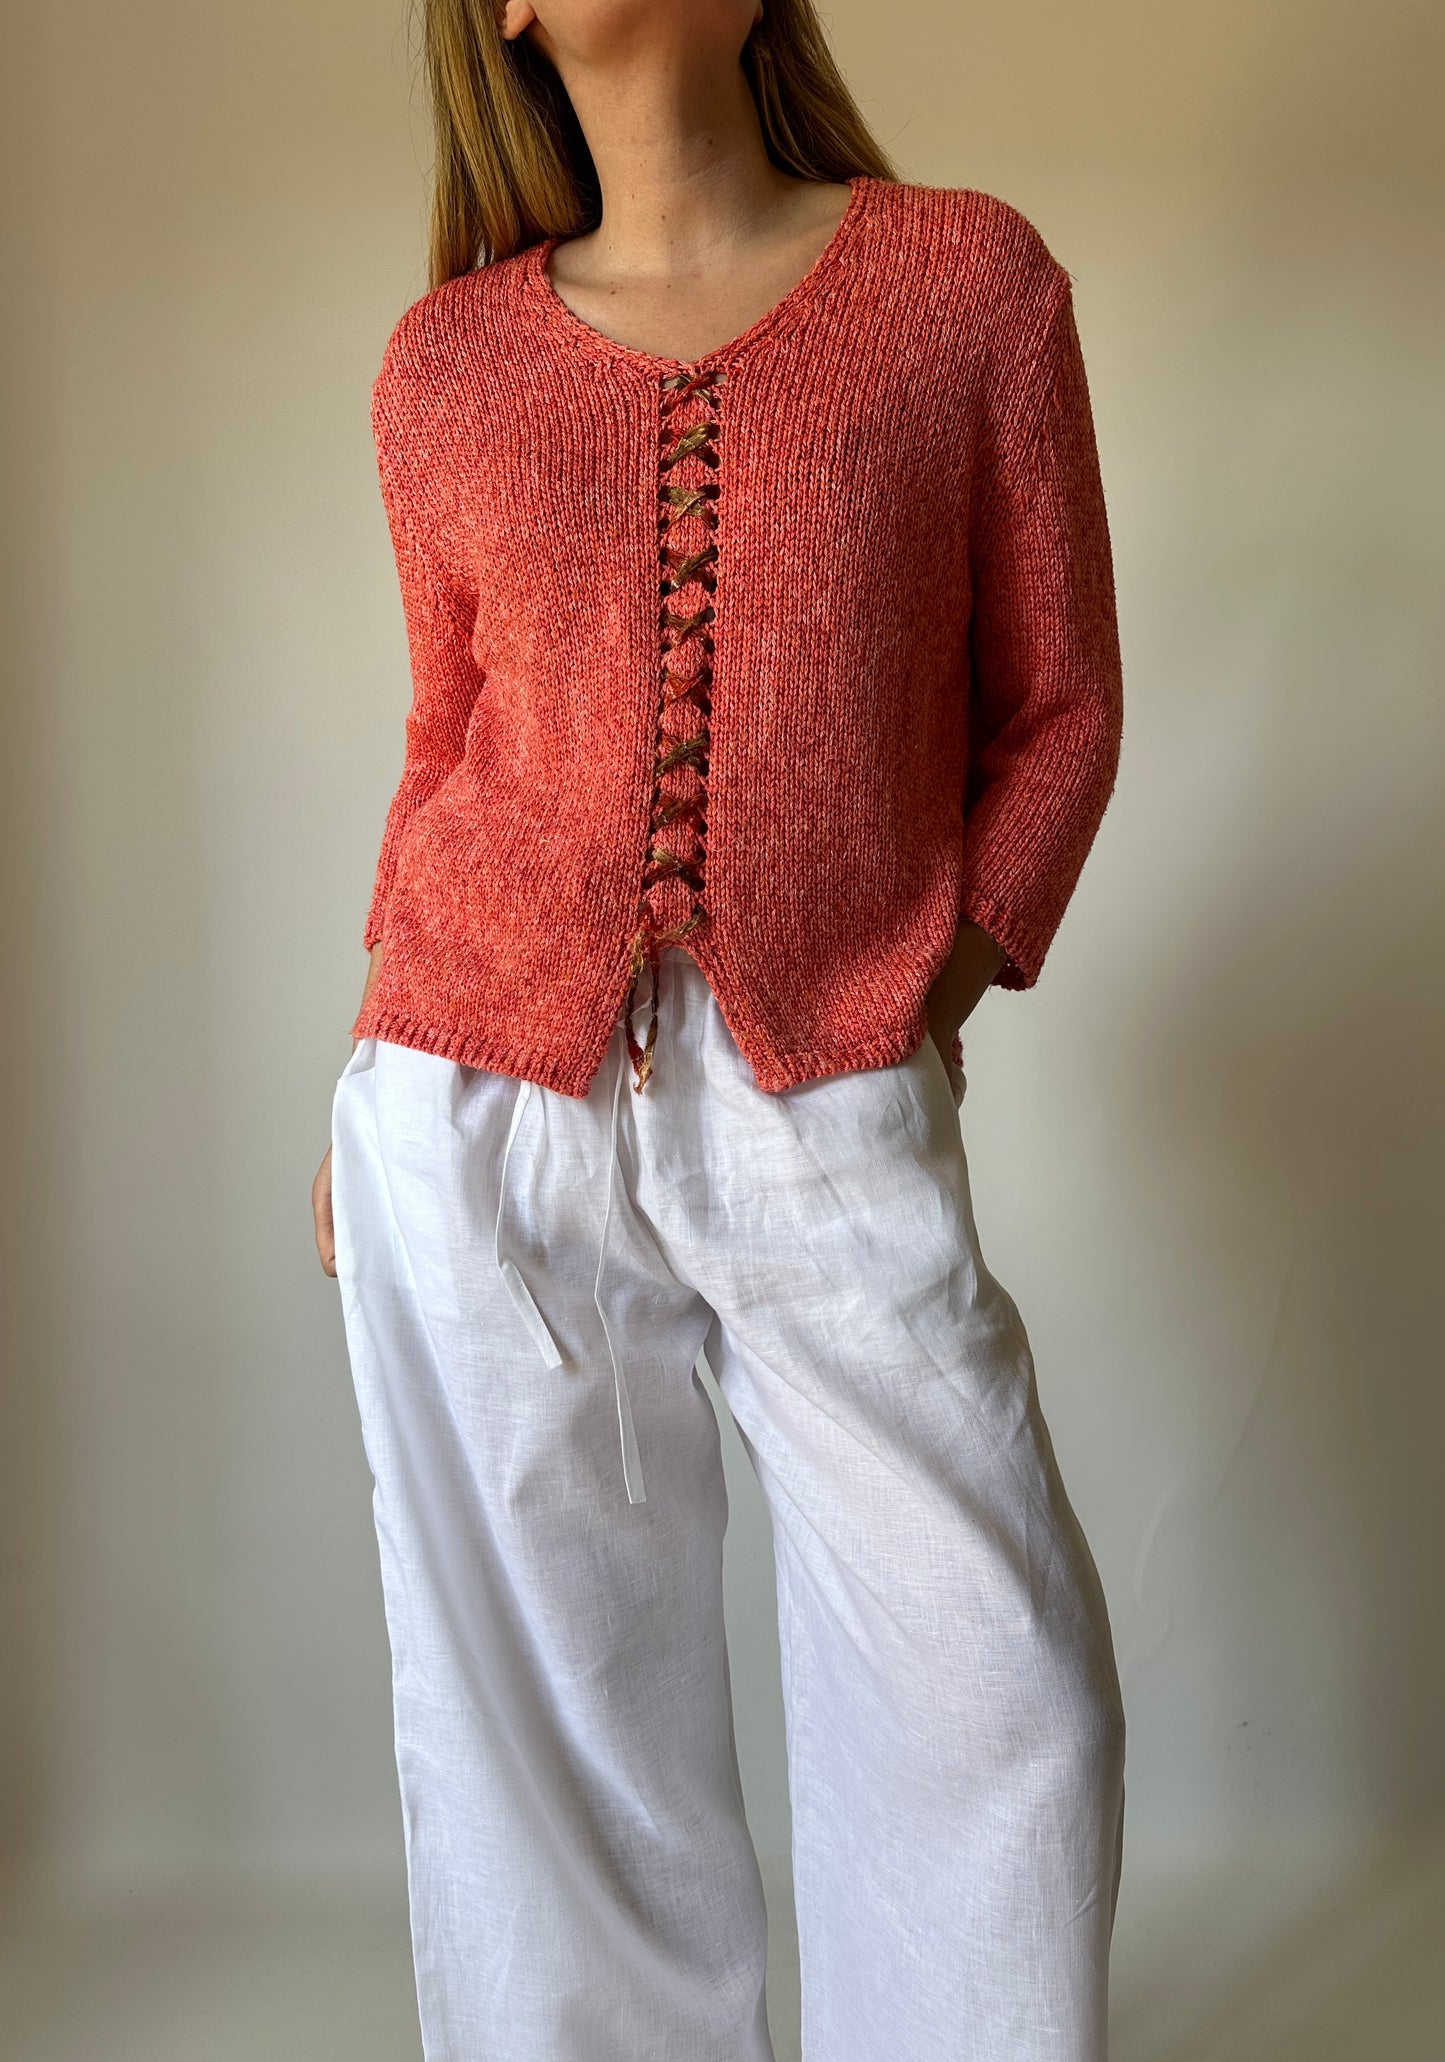 Crochet orange pull